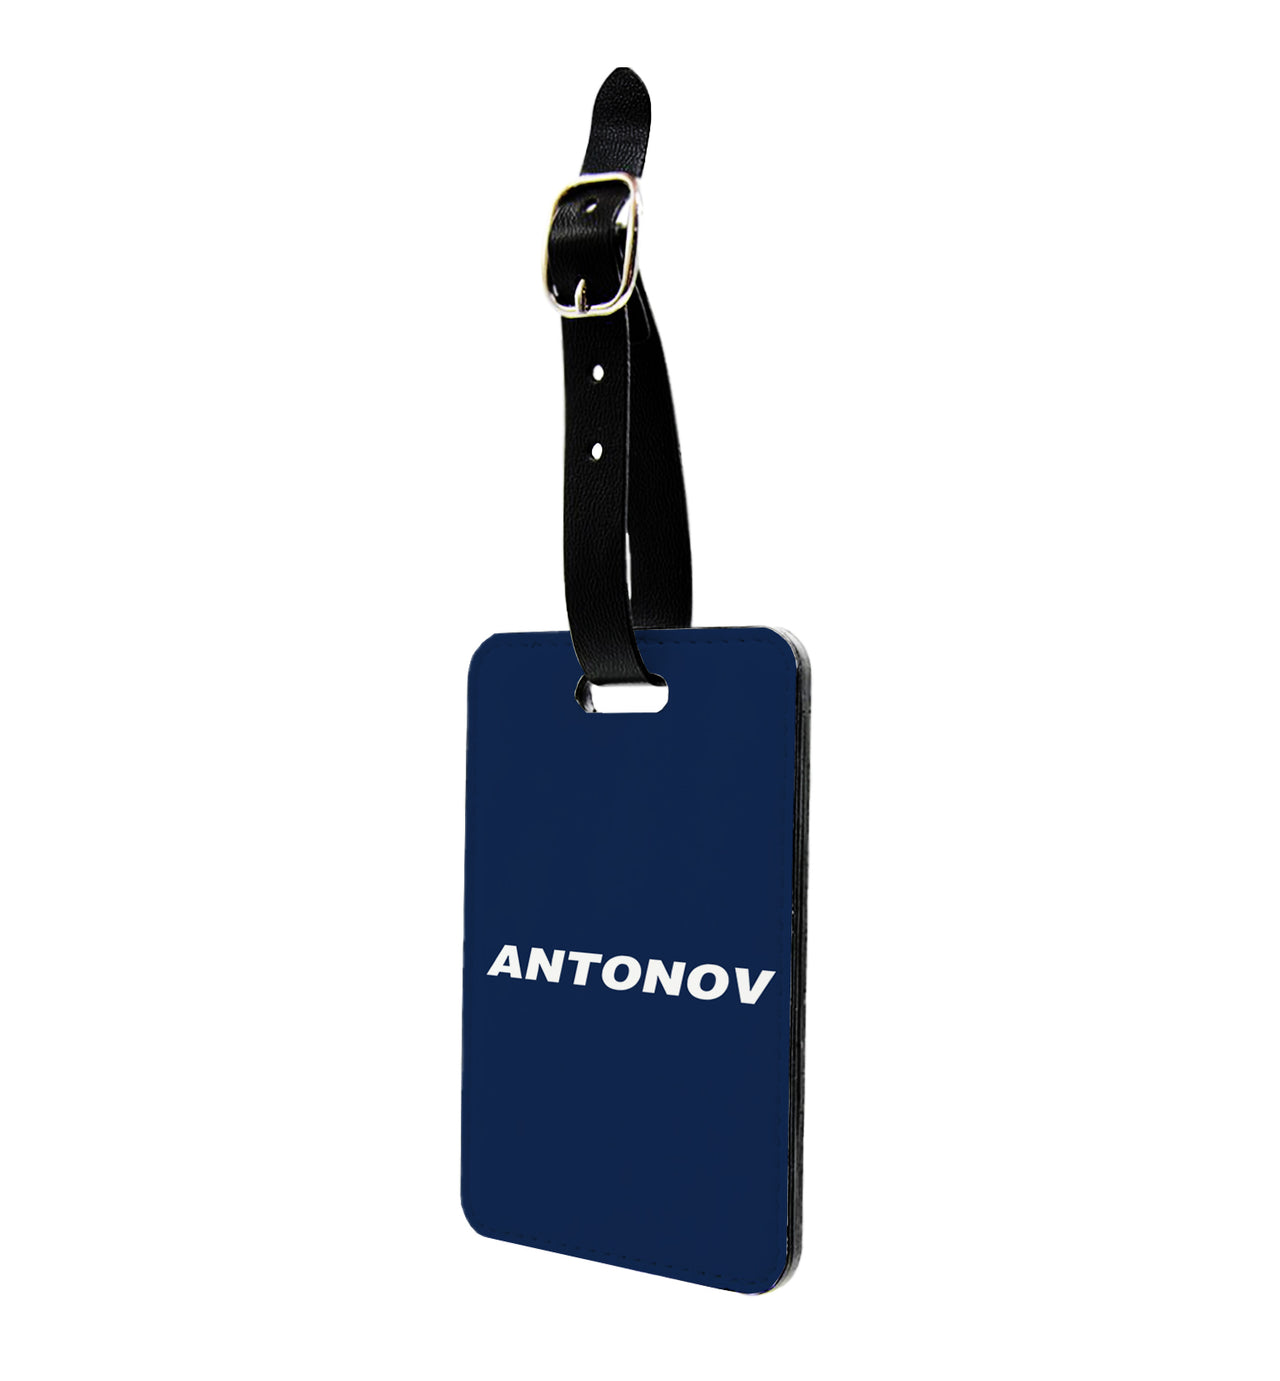 Antonov & Text Designed Luggage Tag